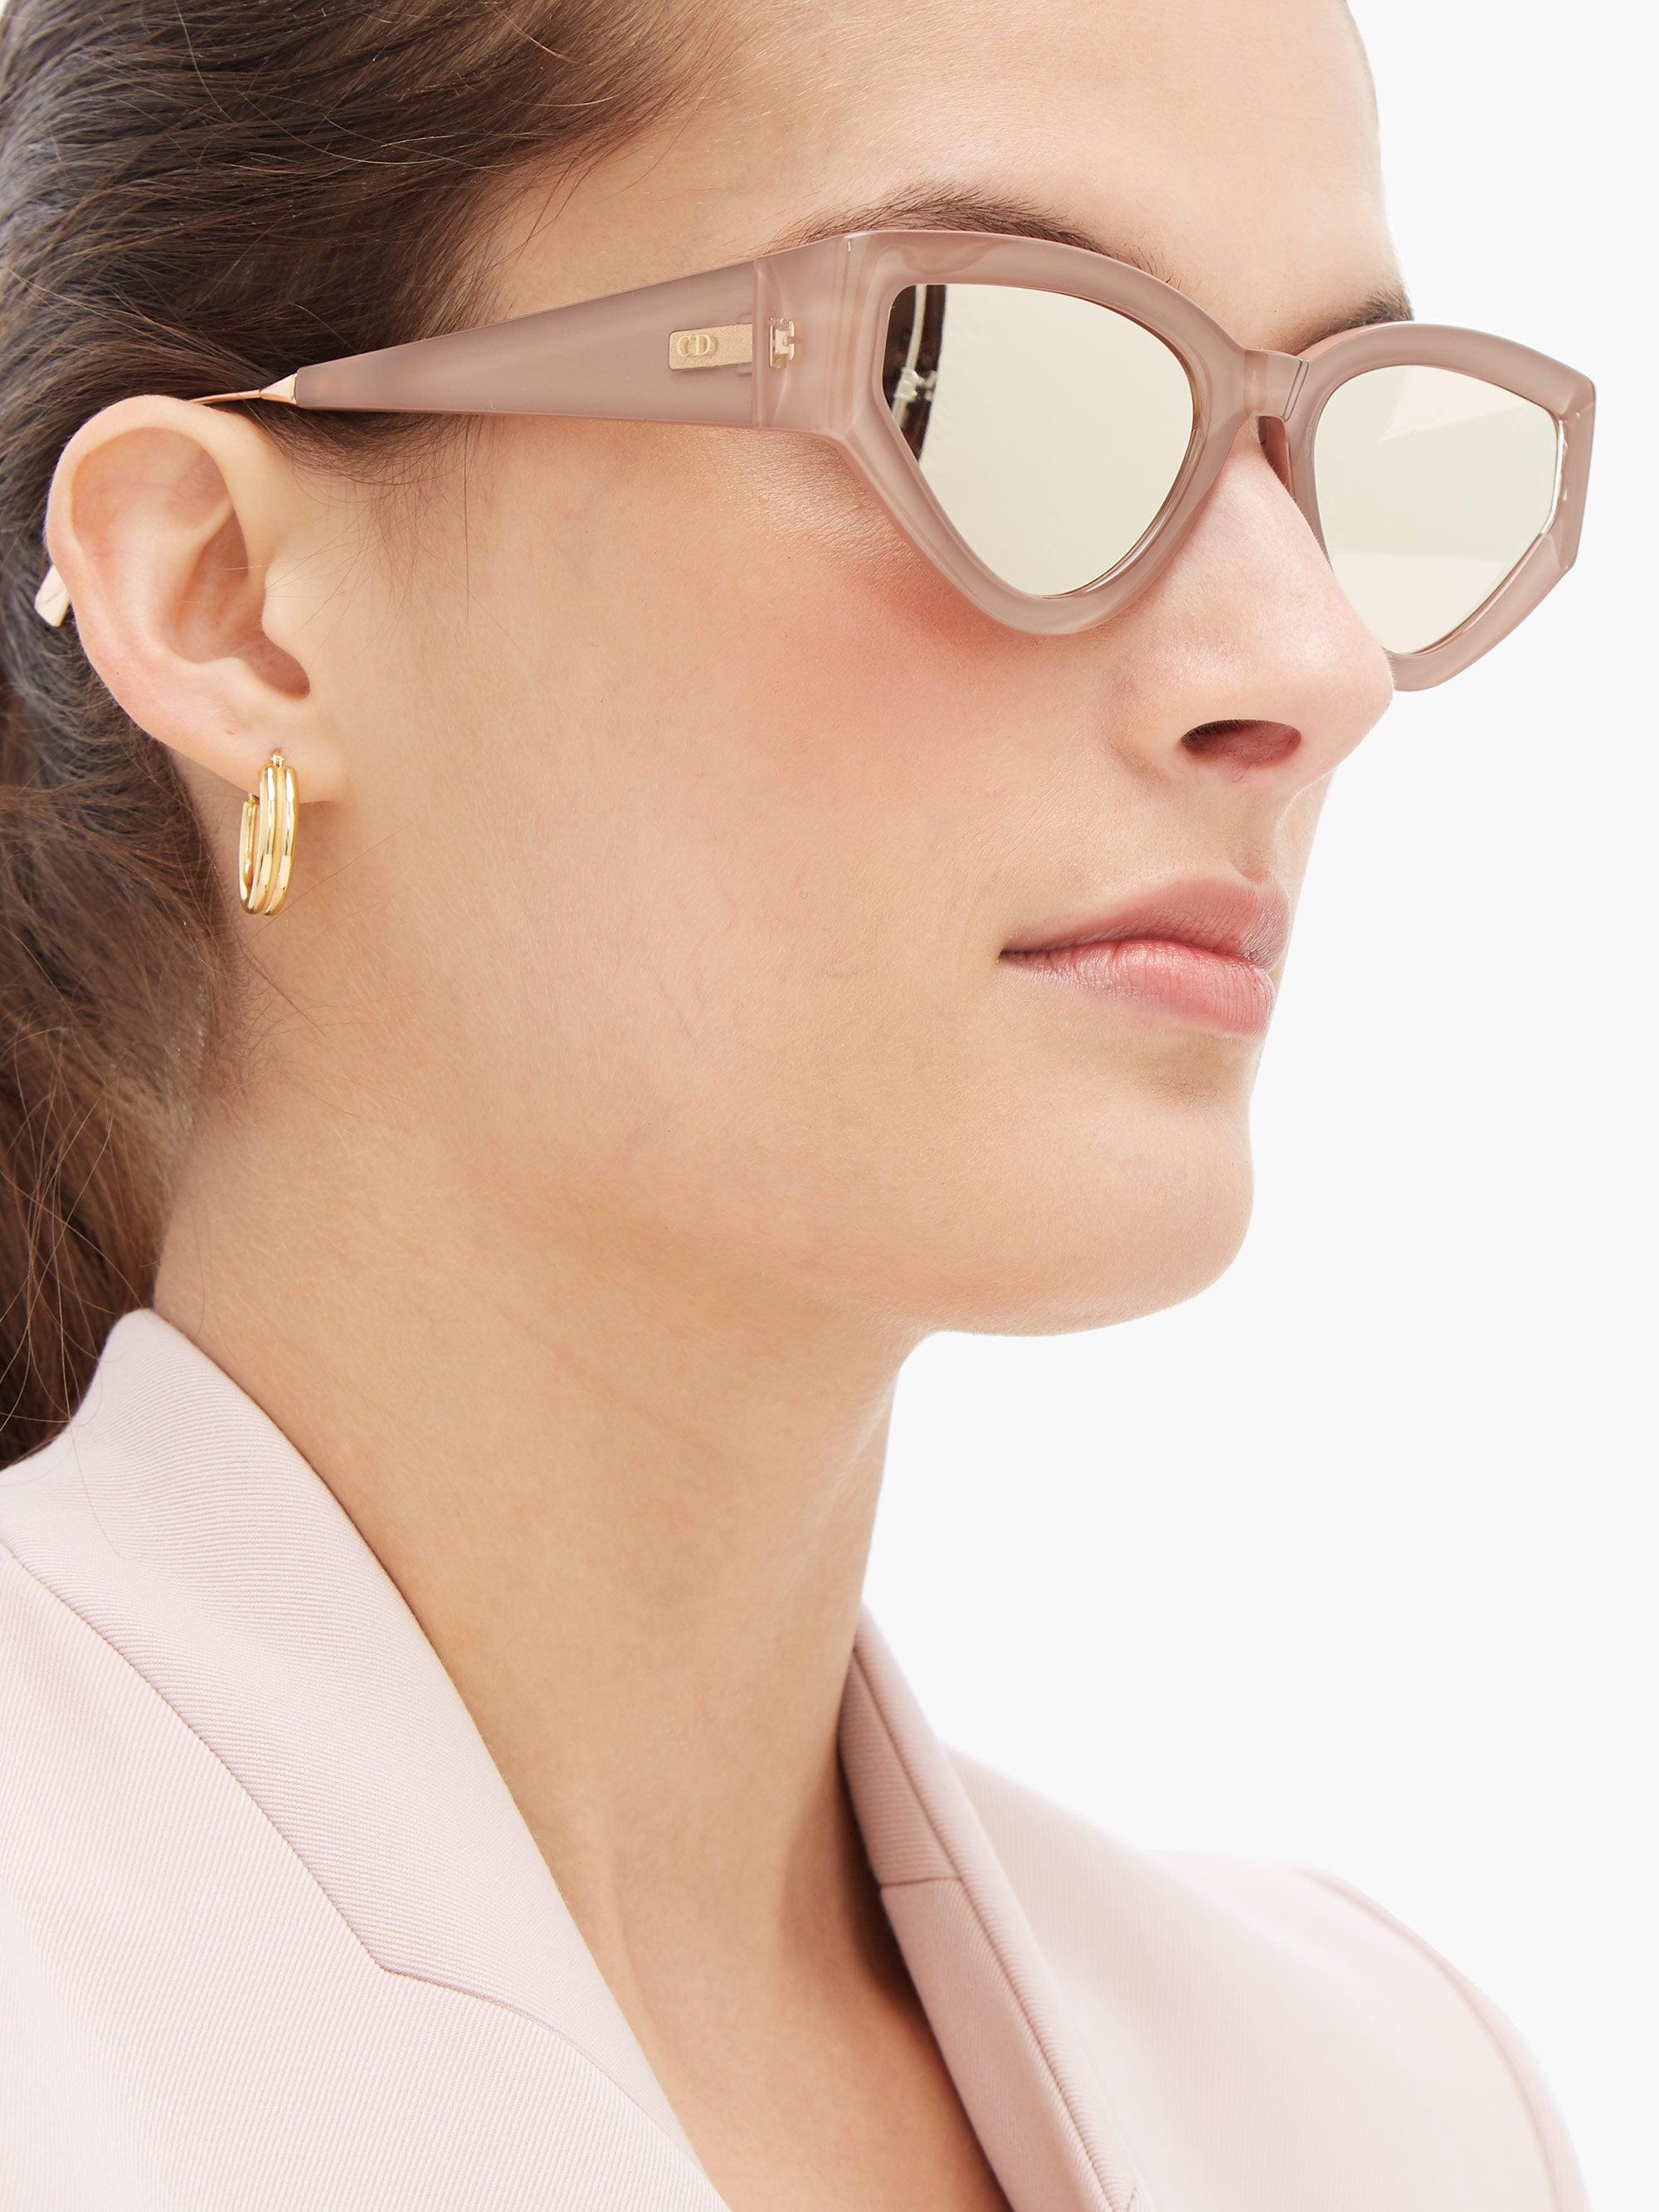 Dior CATSTYLEDIOR1 Sunglasses  Mia Burton